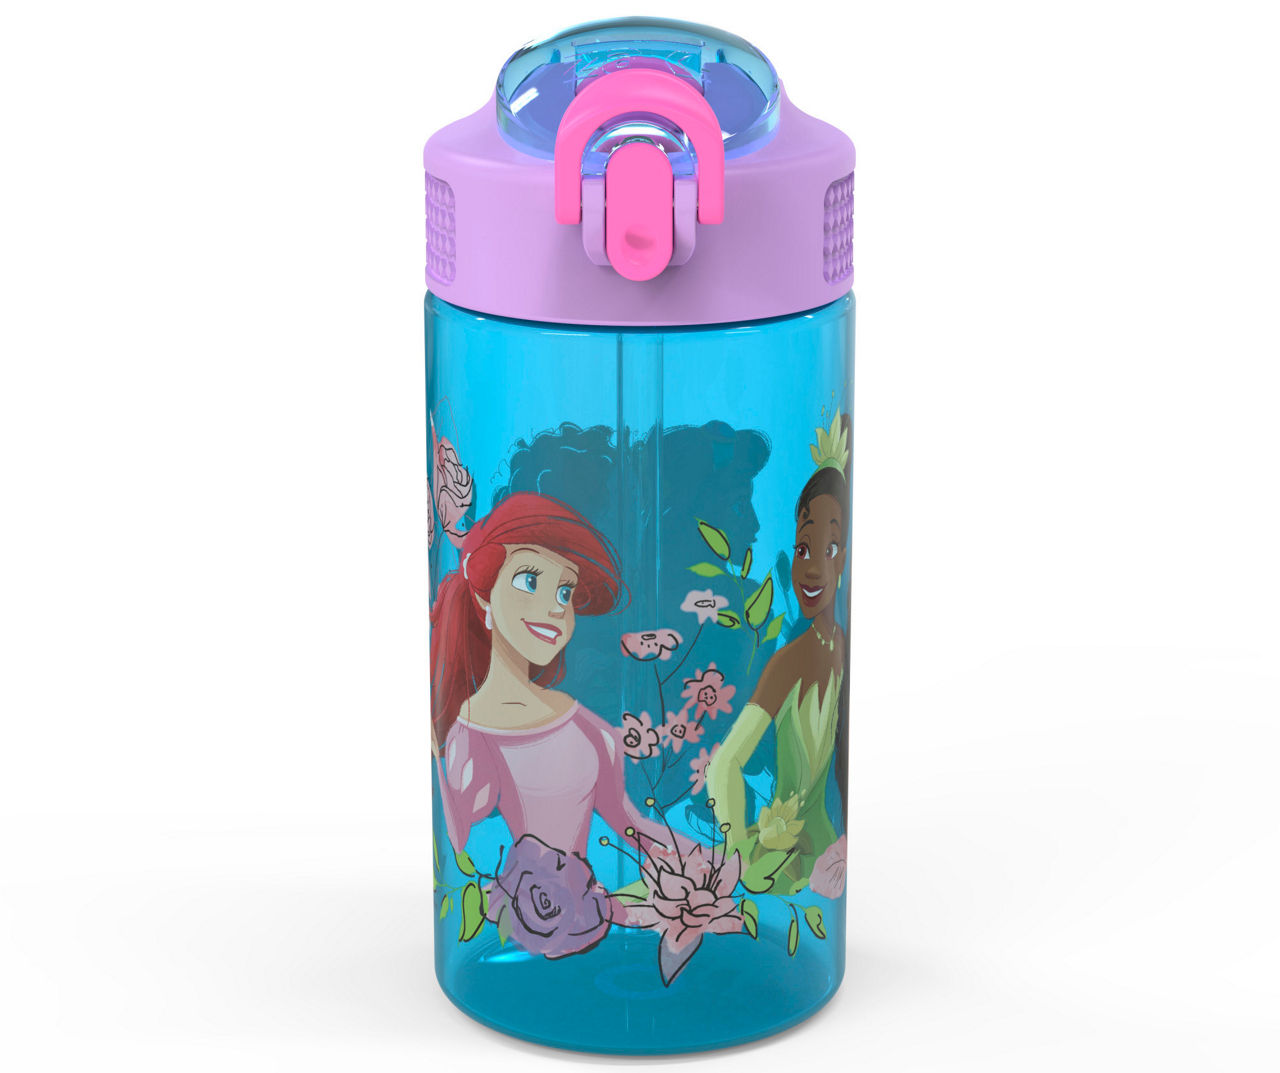 Disney Park Action Blue & Purple Princess Spout Water Bottle, 16